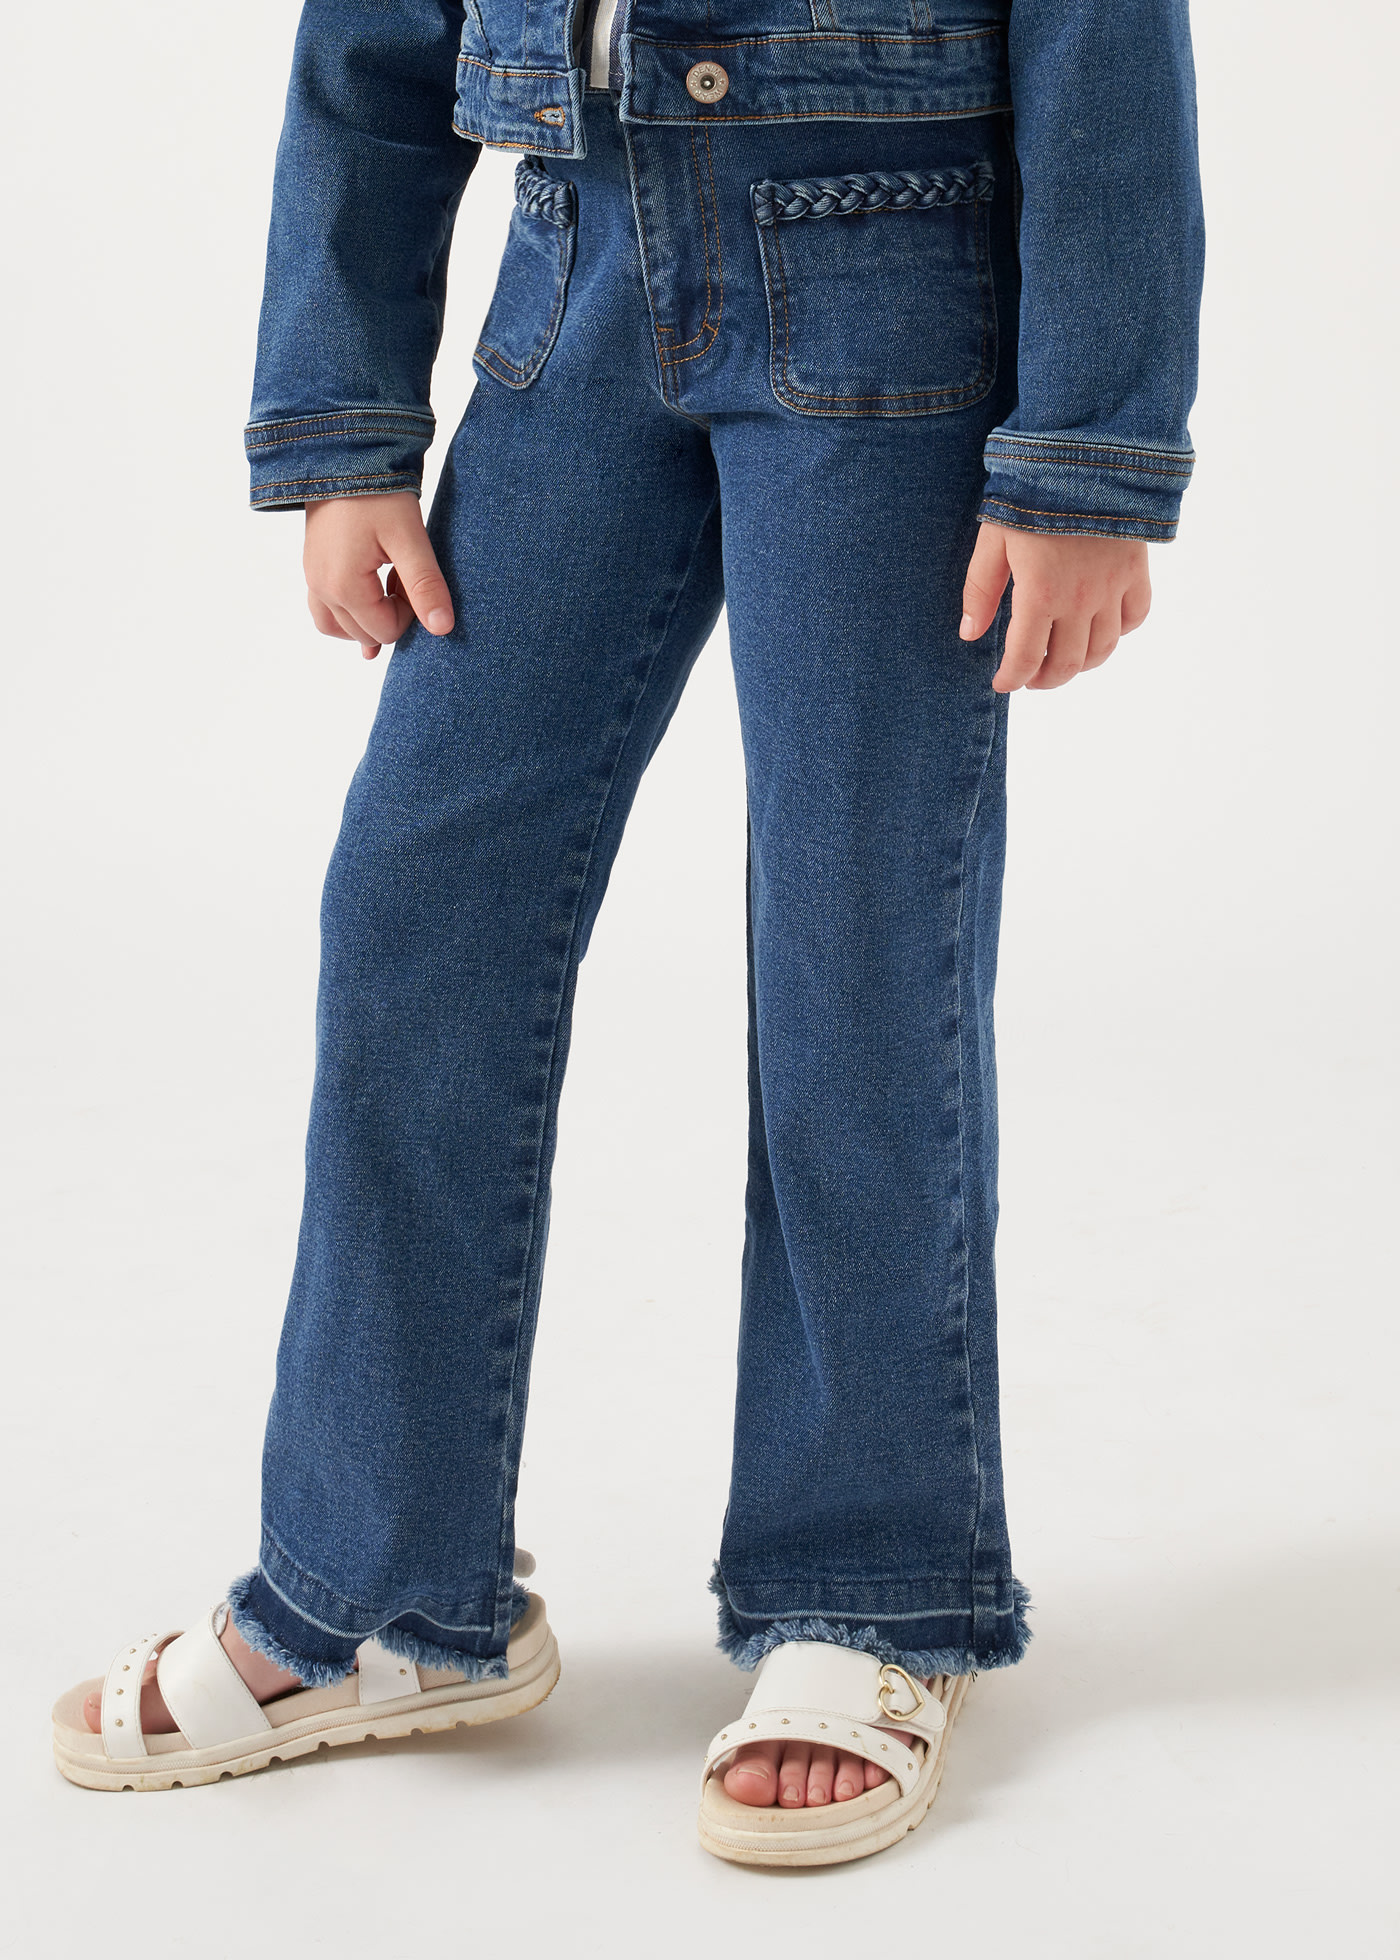 Jeanshose hochgeschnitten Better Cotton Teenager Mädchen